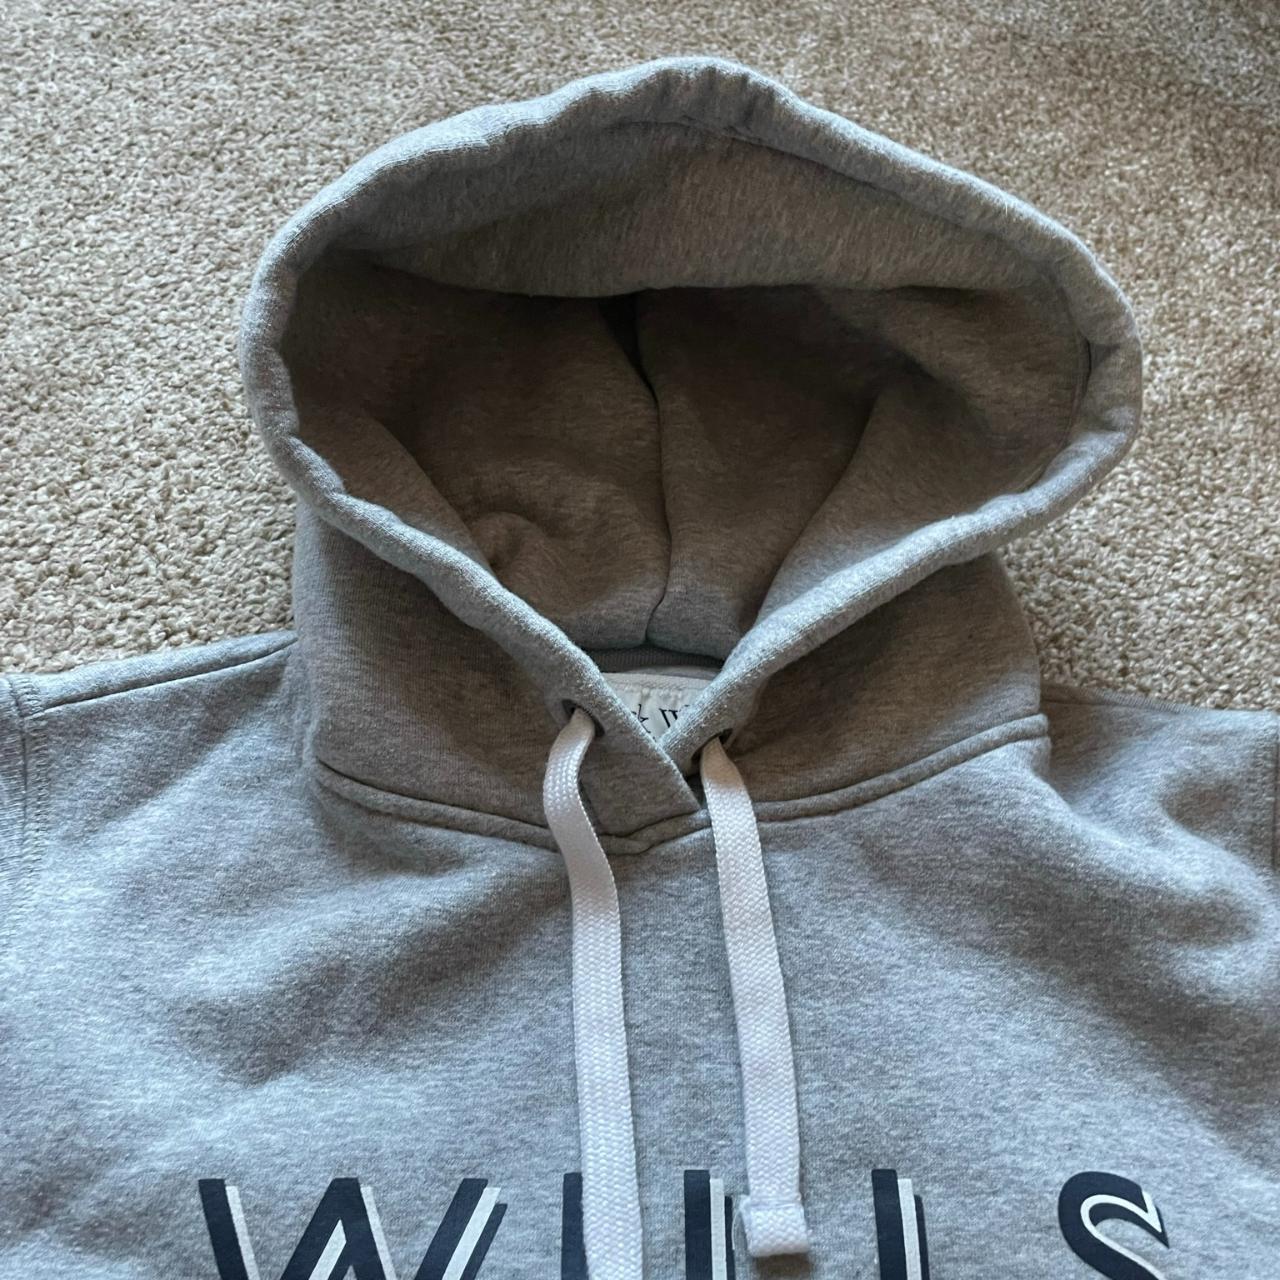 Jack Wills Grey Hooded Sweatshirt 12 Fleece... - Depop